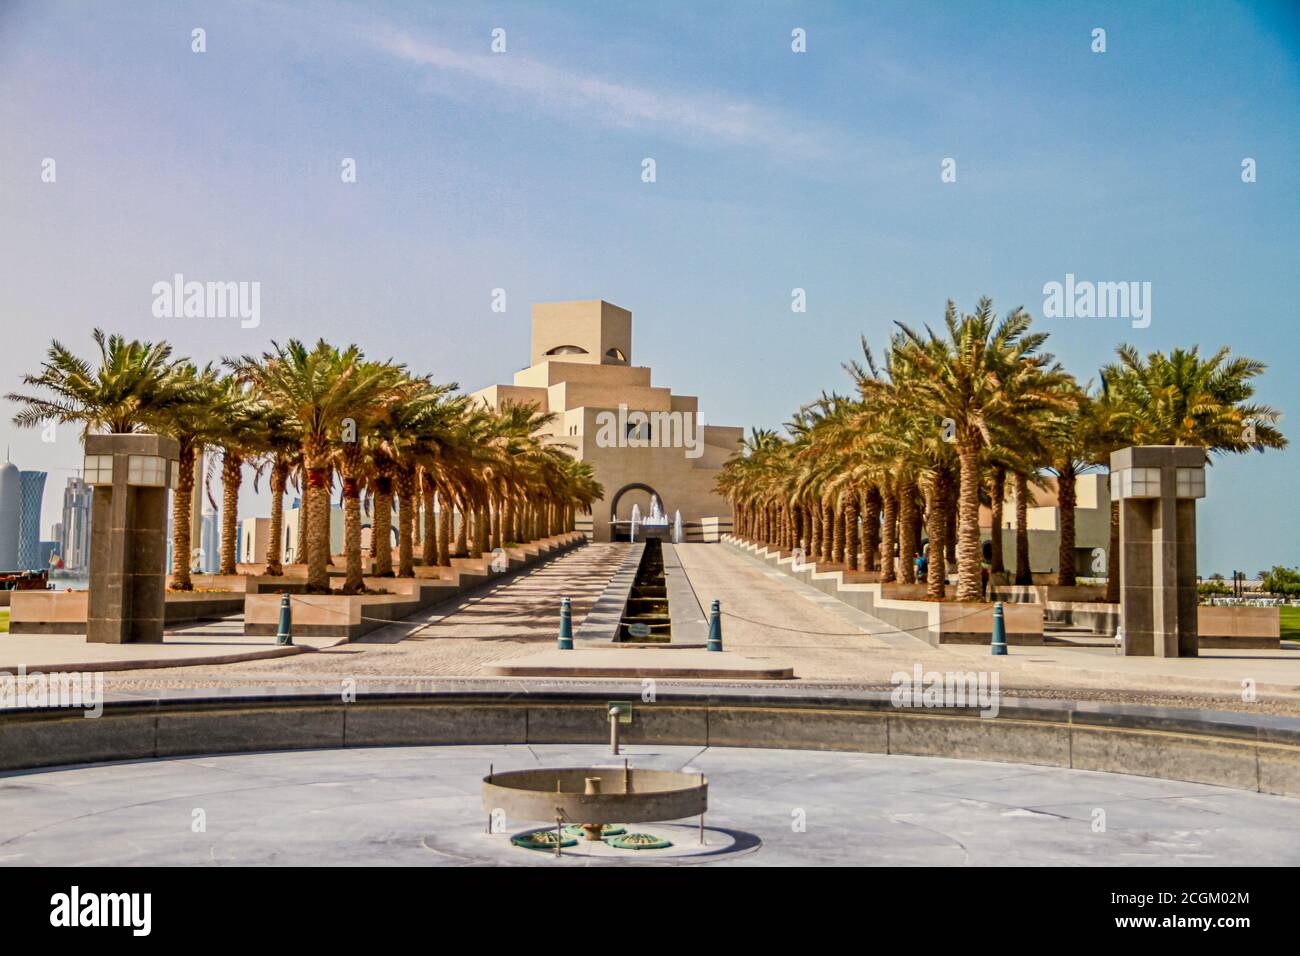 Qatar Islamic  museum, Stock Photo